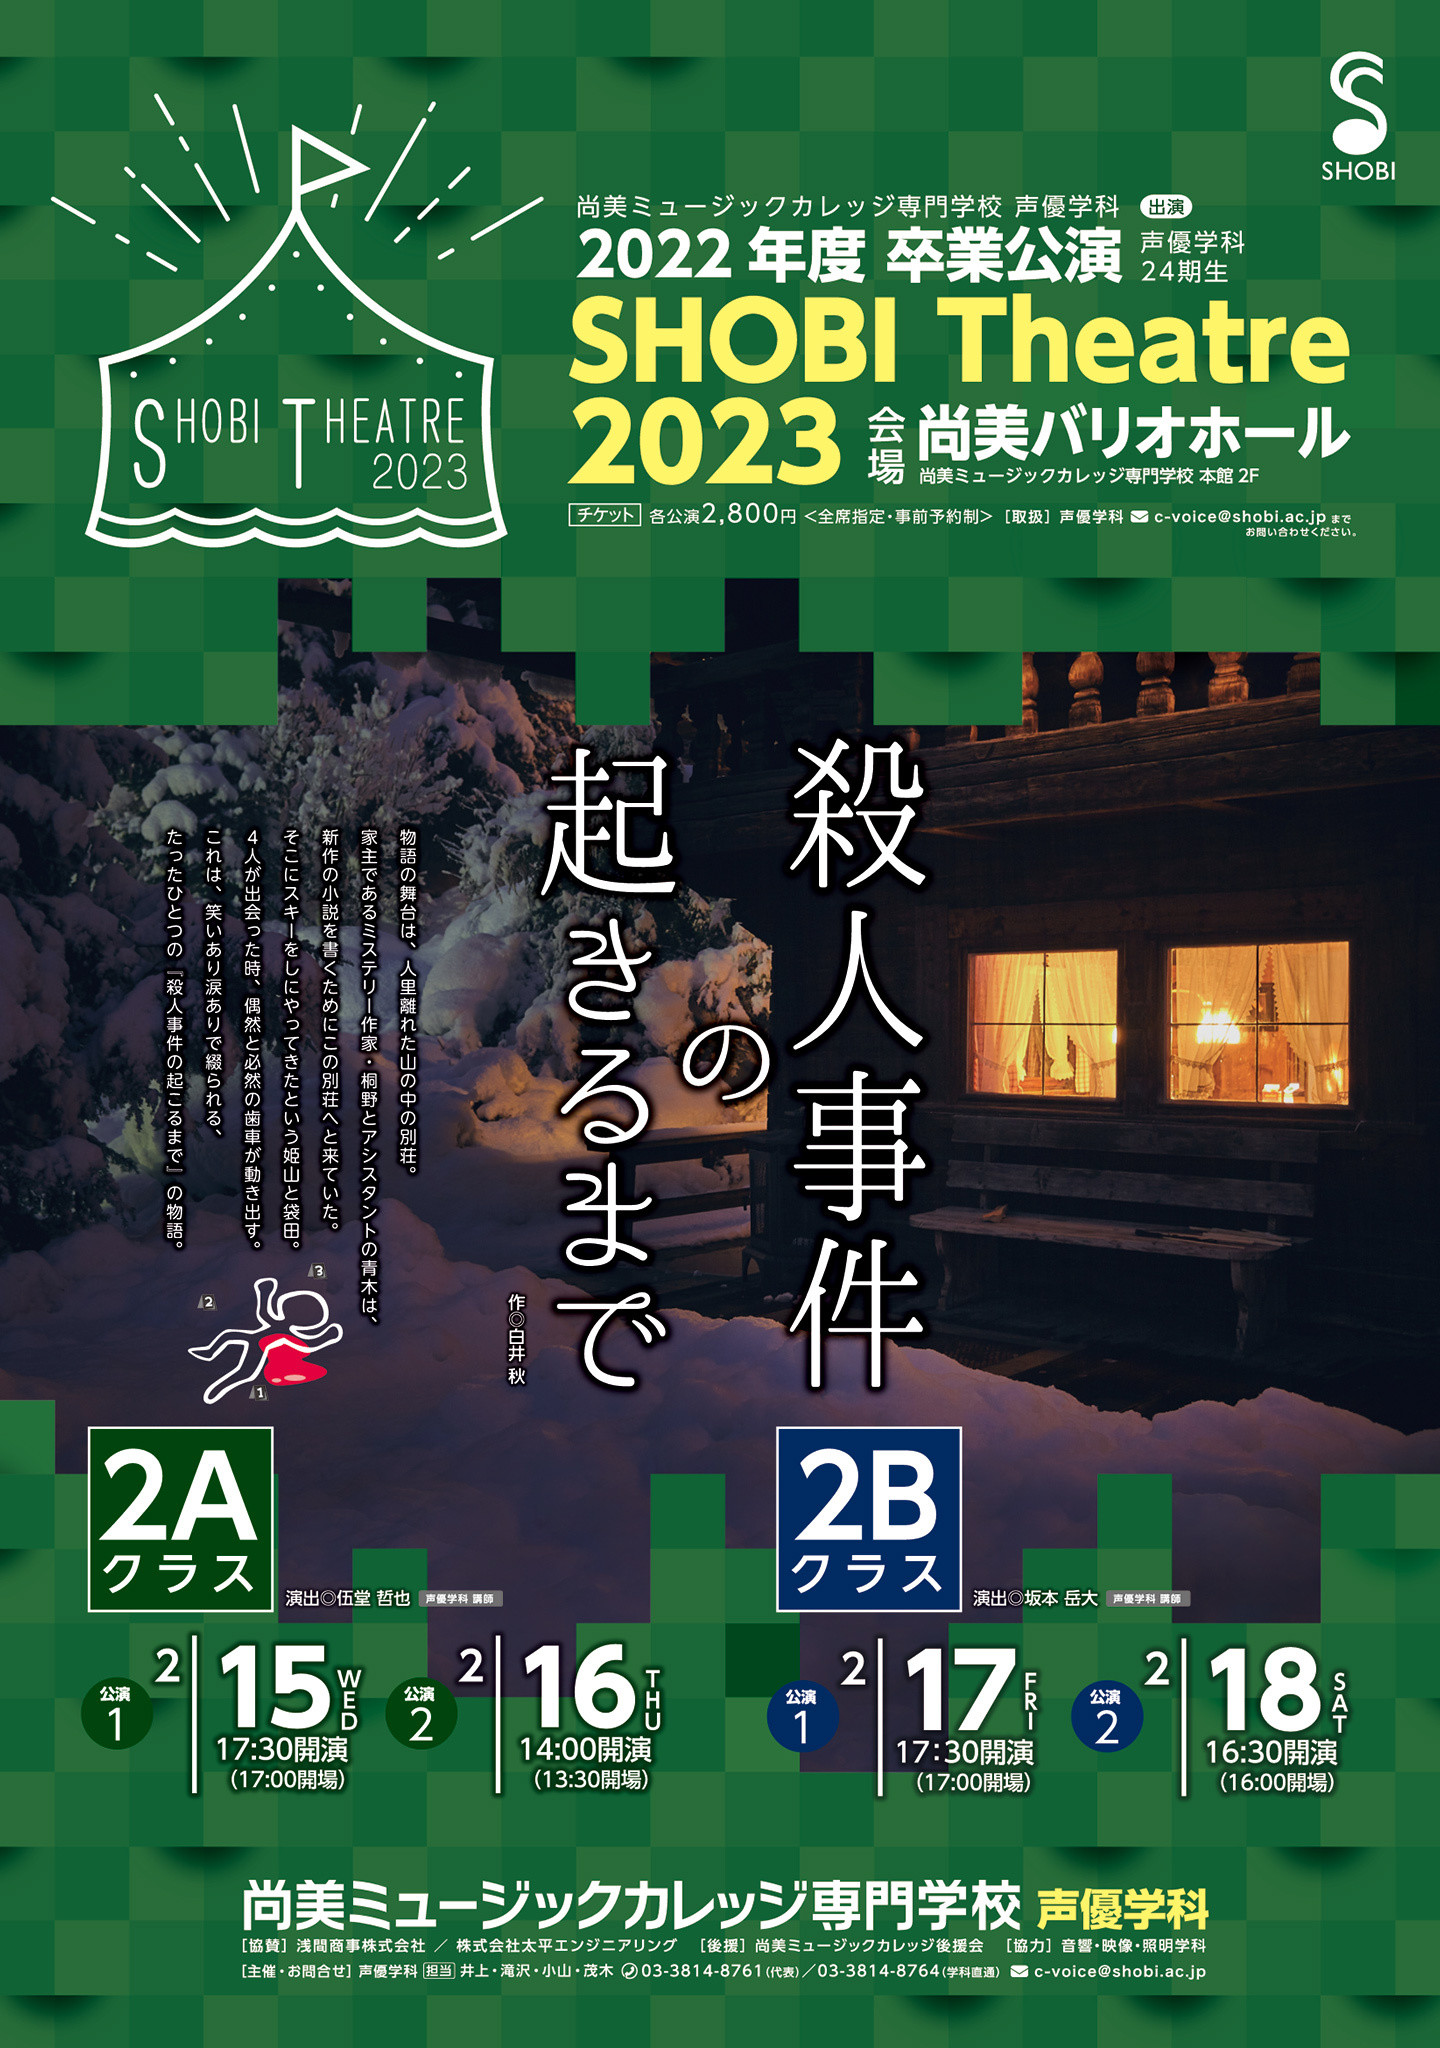 【2月15日・16日・17日・18日開催】2022年度声優学科第24期生2年次卒業公演「SHOBI Theatre 2023」